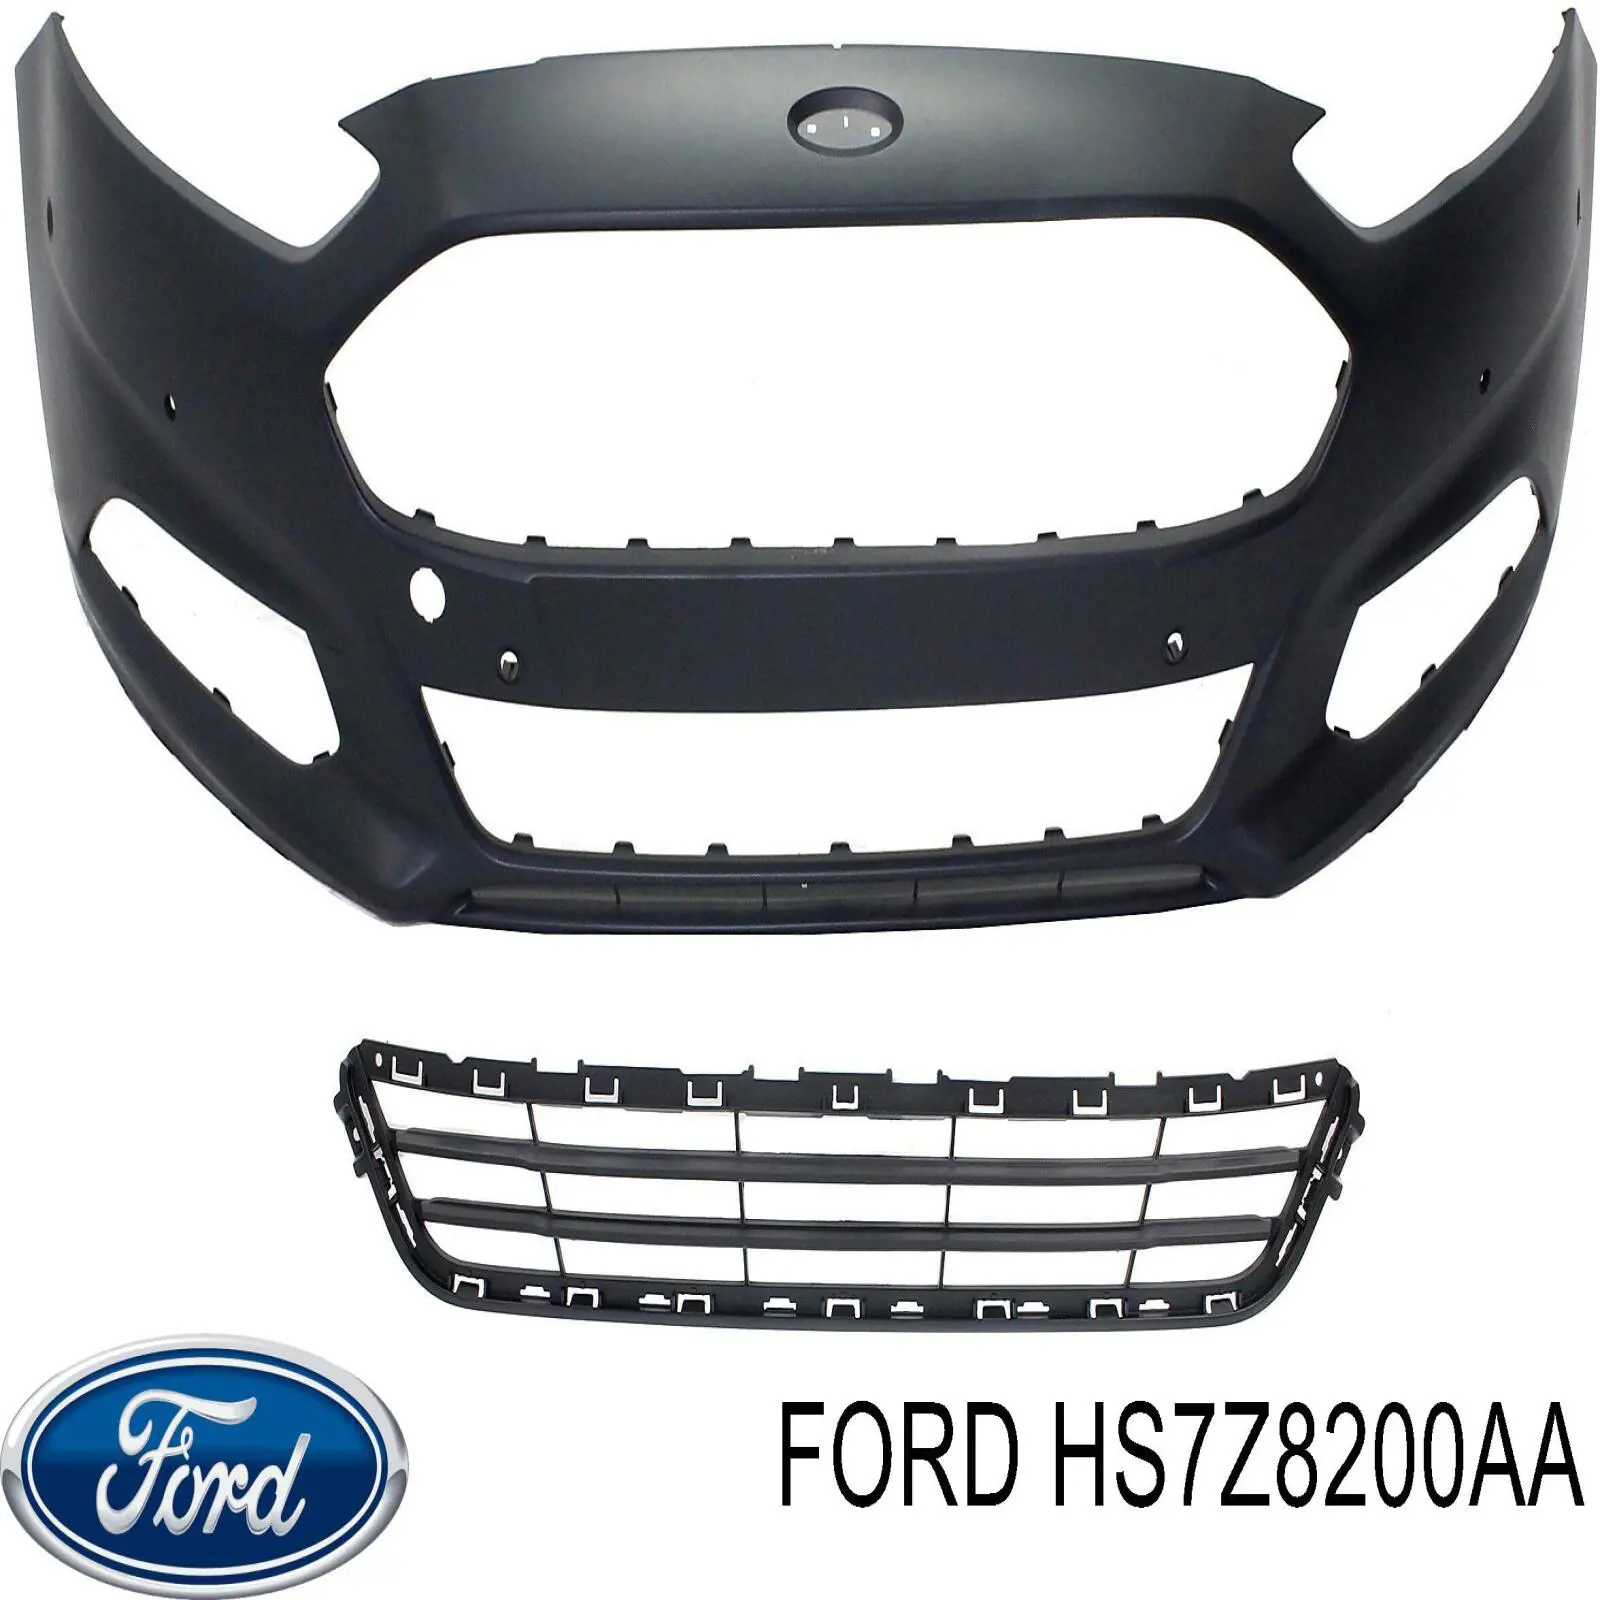 Pfd07023tr хром решетка переднего бампера sport на Ford Fusion 